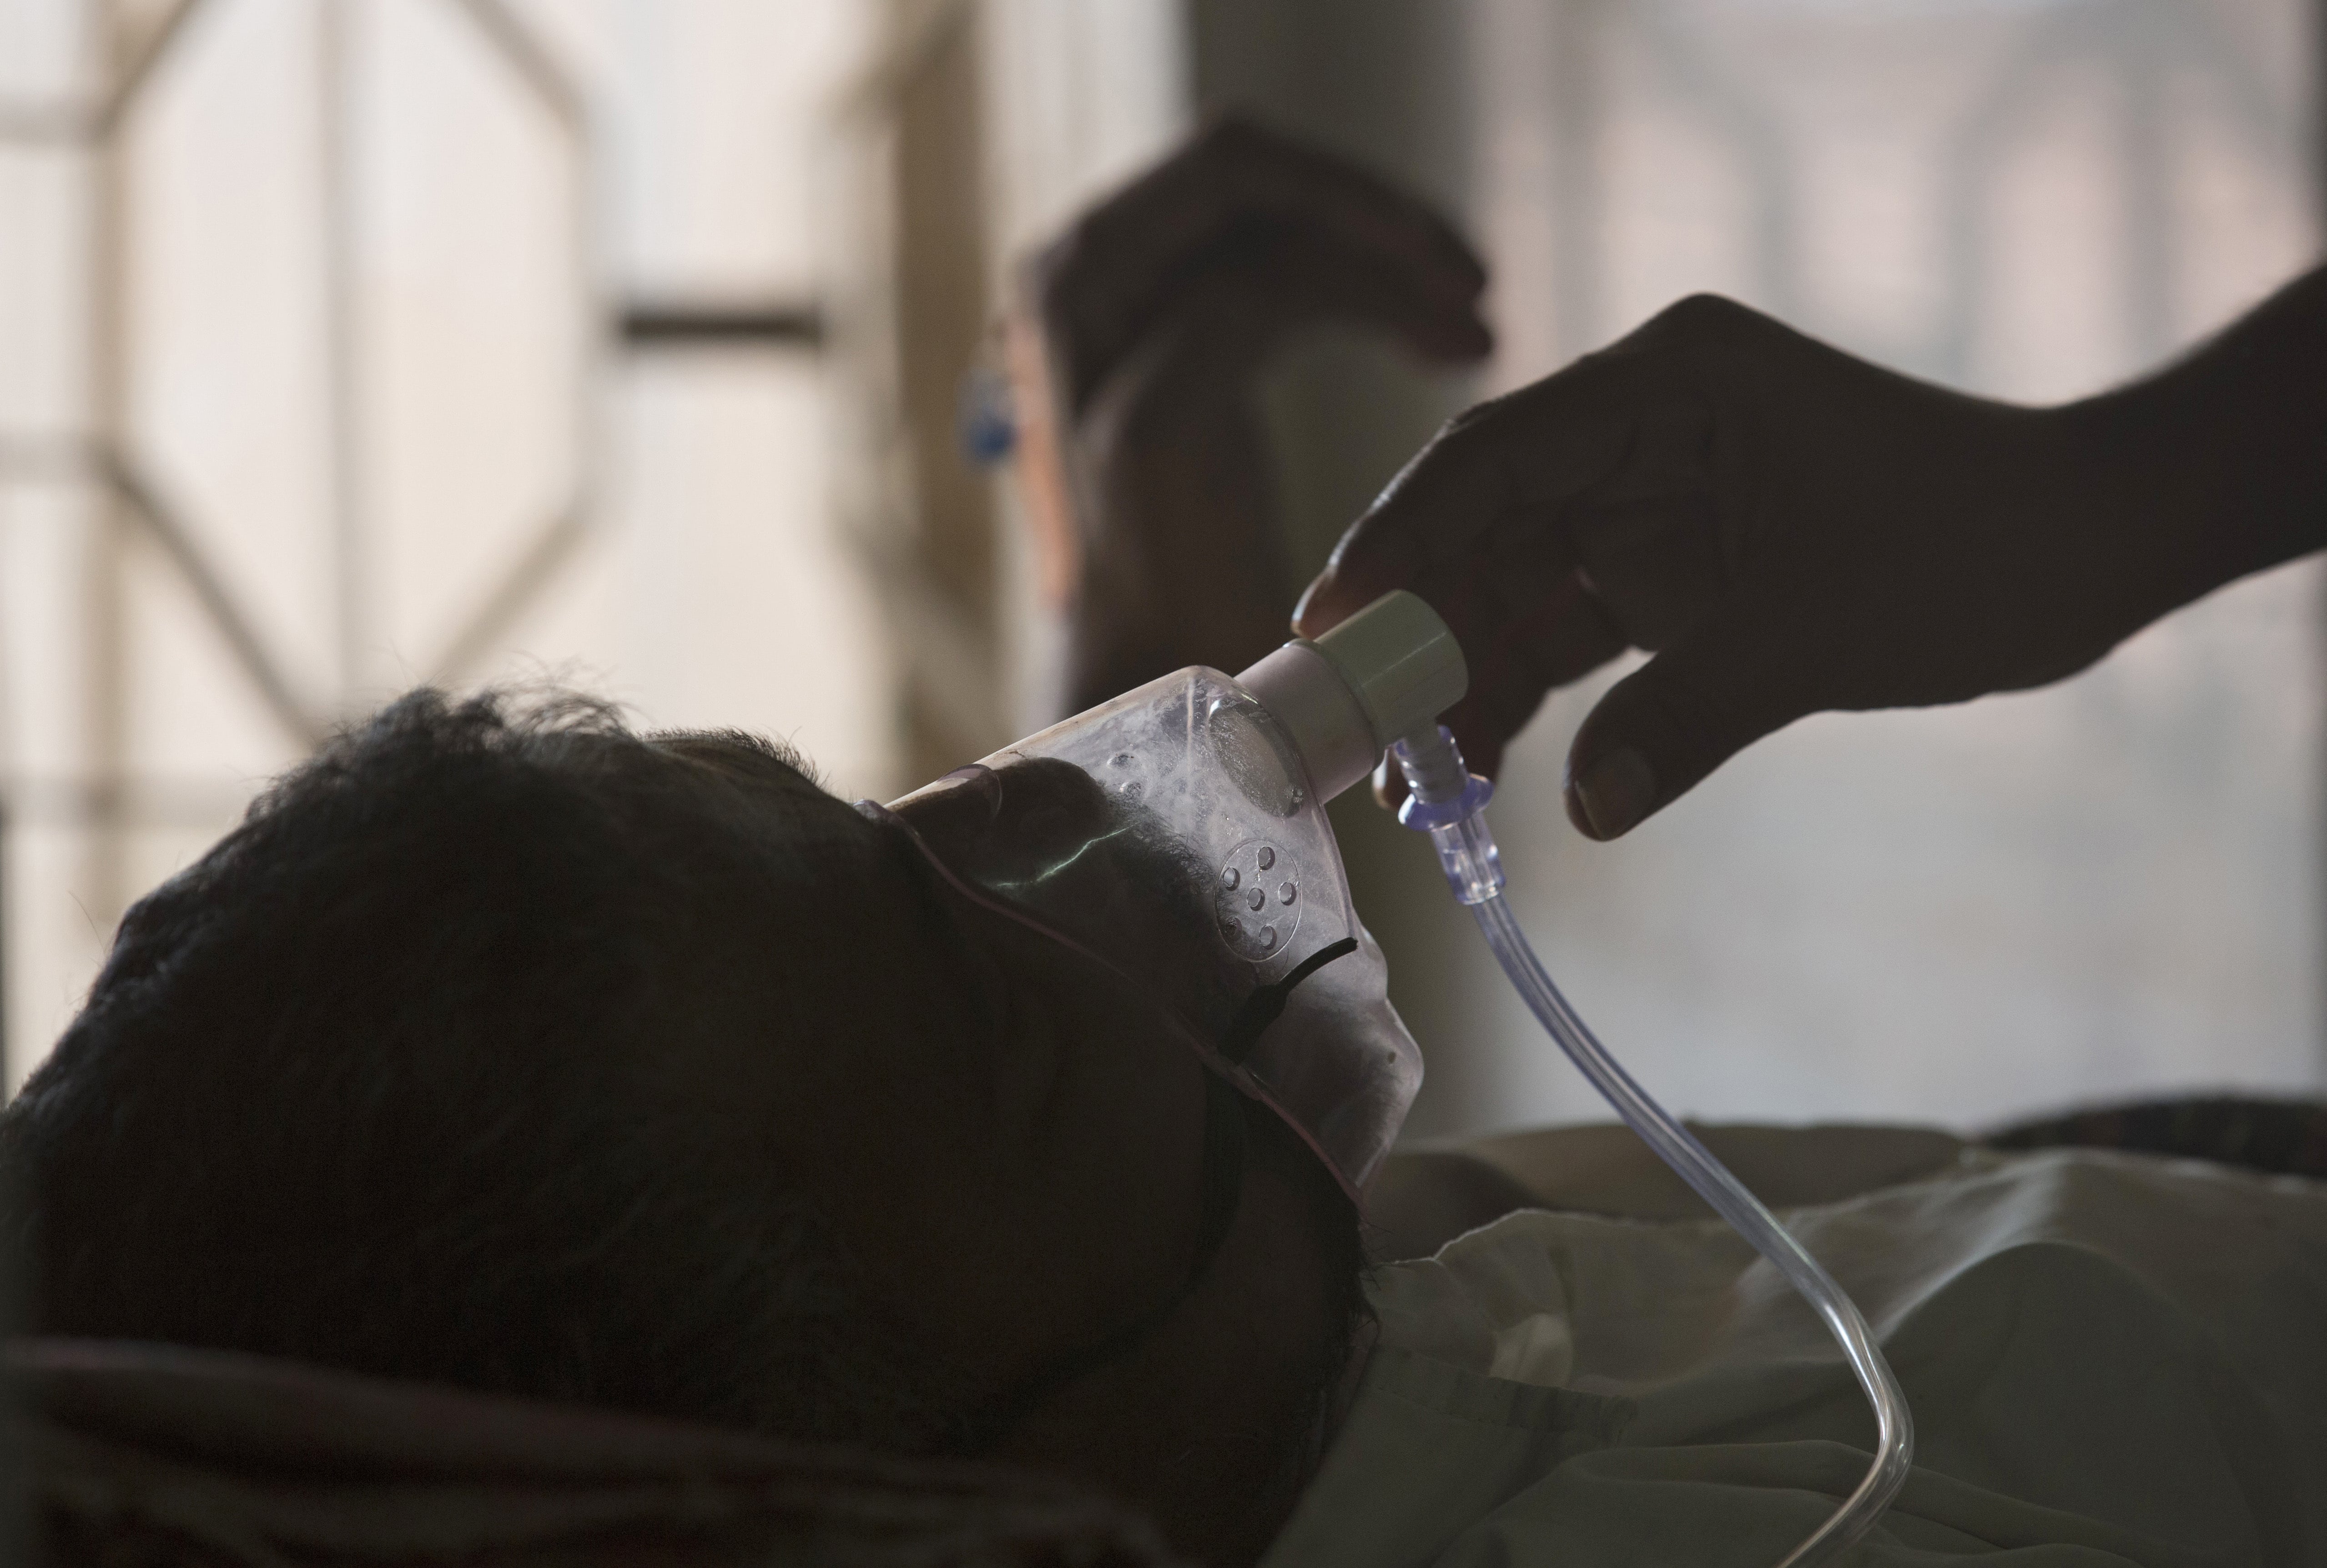 Tuberculosis vuelve a propagarse en el mundo, advierte OMS